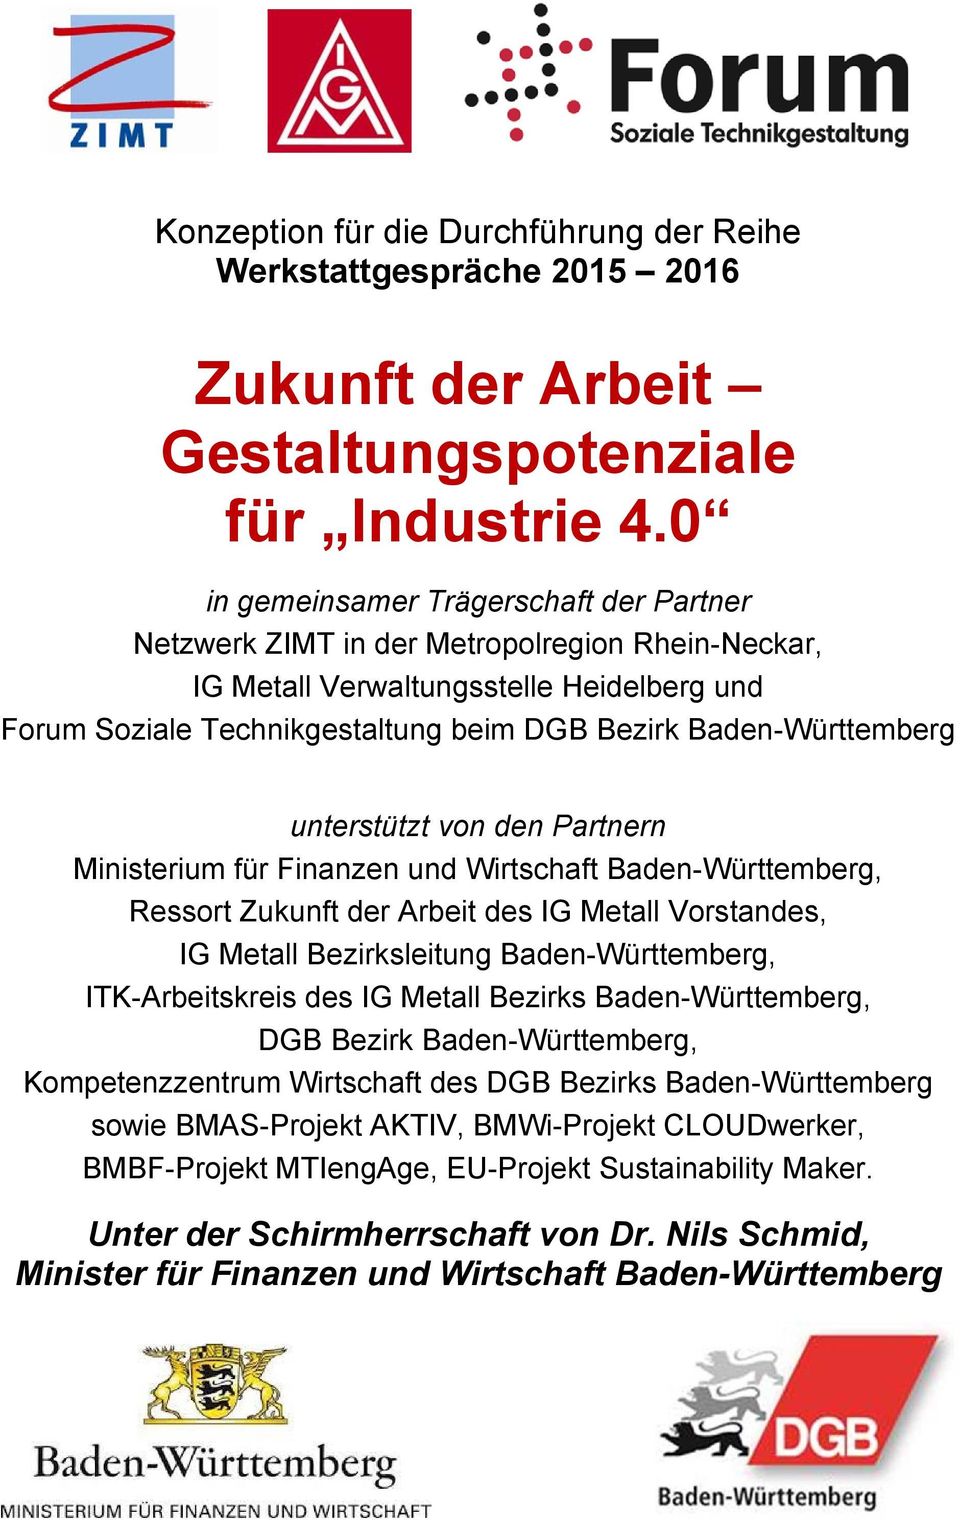 Baden-Württemberg unterstützt von den Partnern Ministerium für Finanzen und Wirtschaft Baden-Württemberg, Ressort Zukunft der Arbeit des IG Metall Vorstandes, IG Metall Bezirksleitung